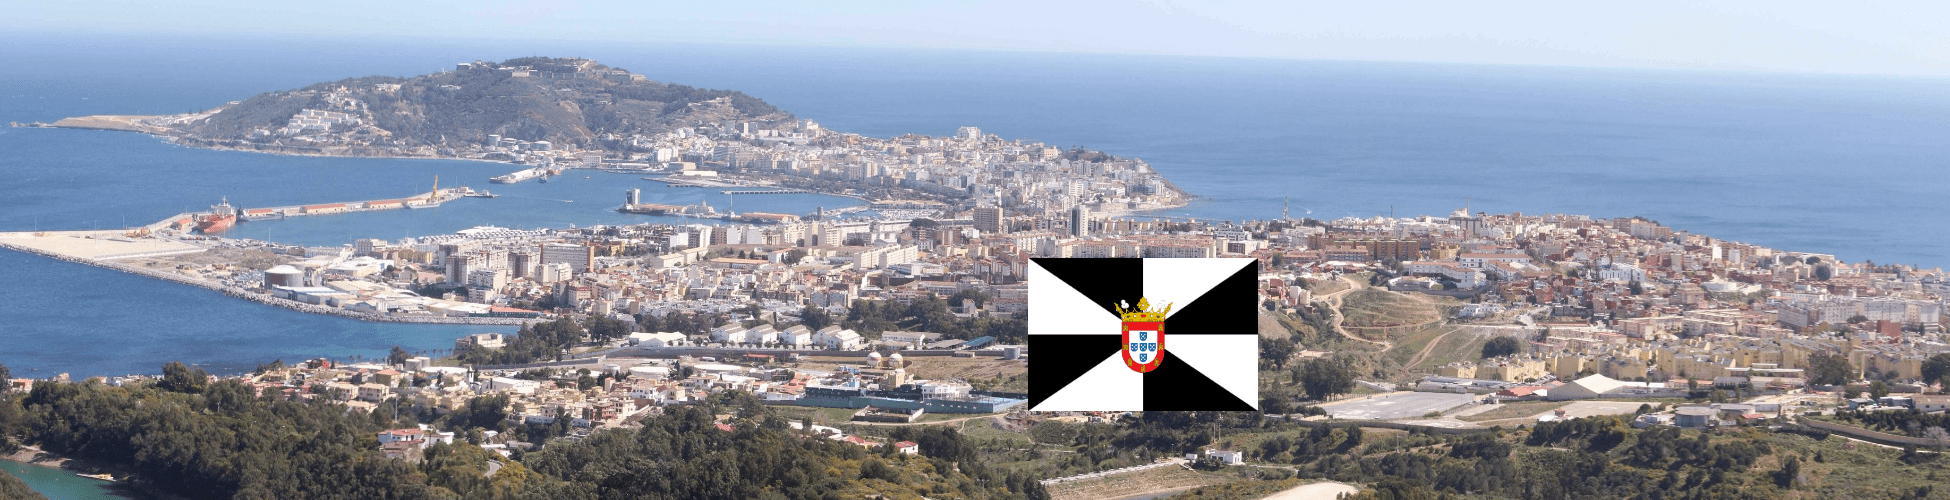 Imagen recurso del puerto de destino Ceuta para la ruta en ferry Algeciras - Ceuta